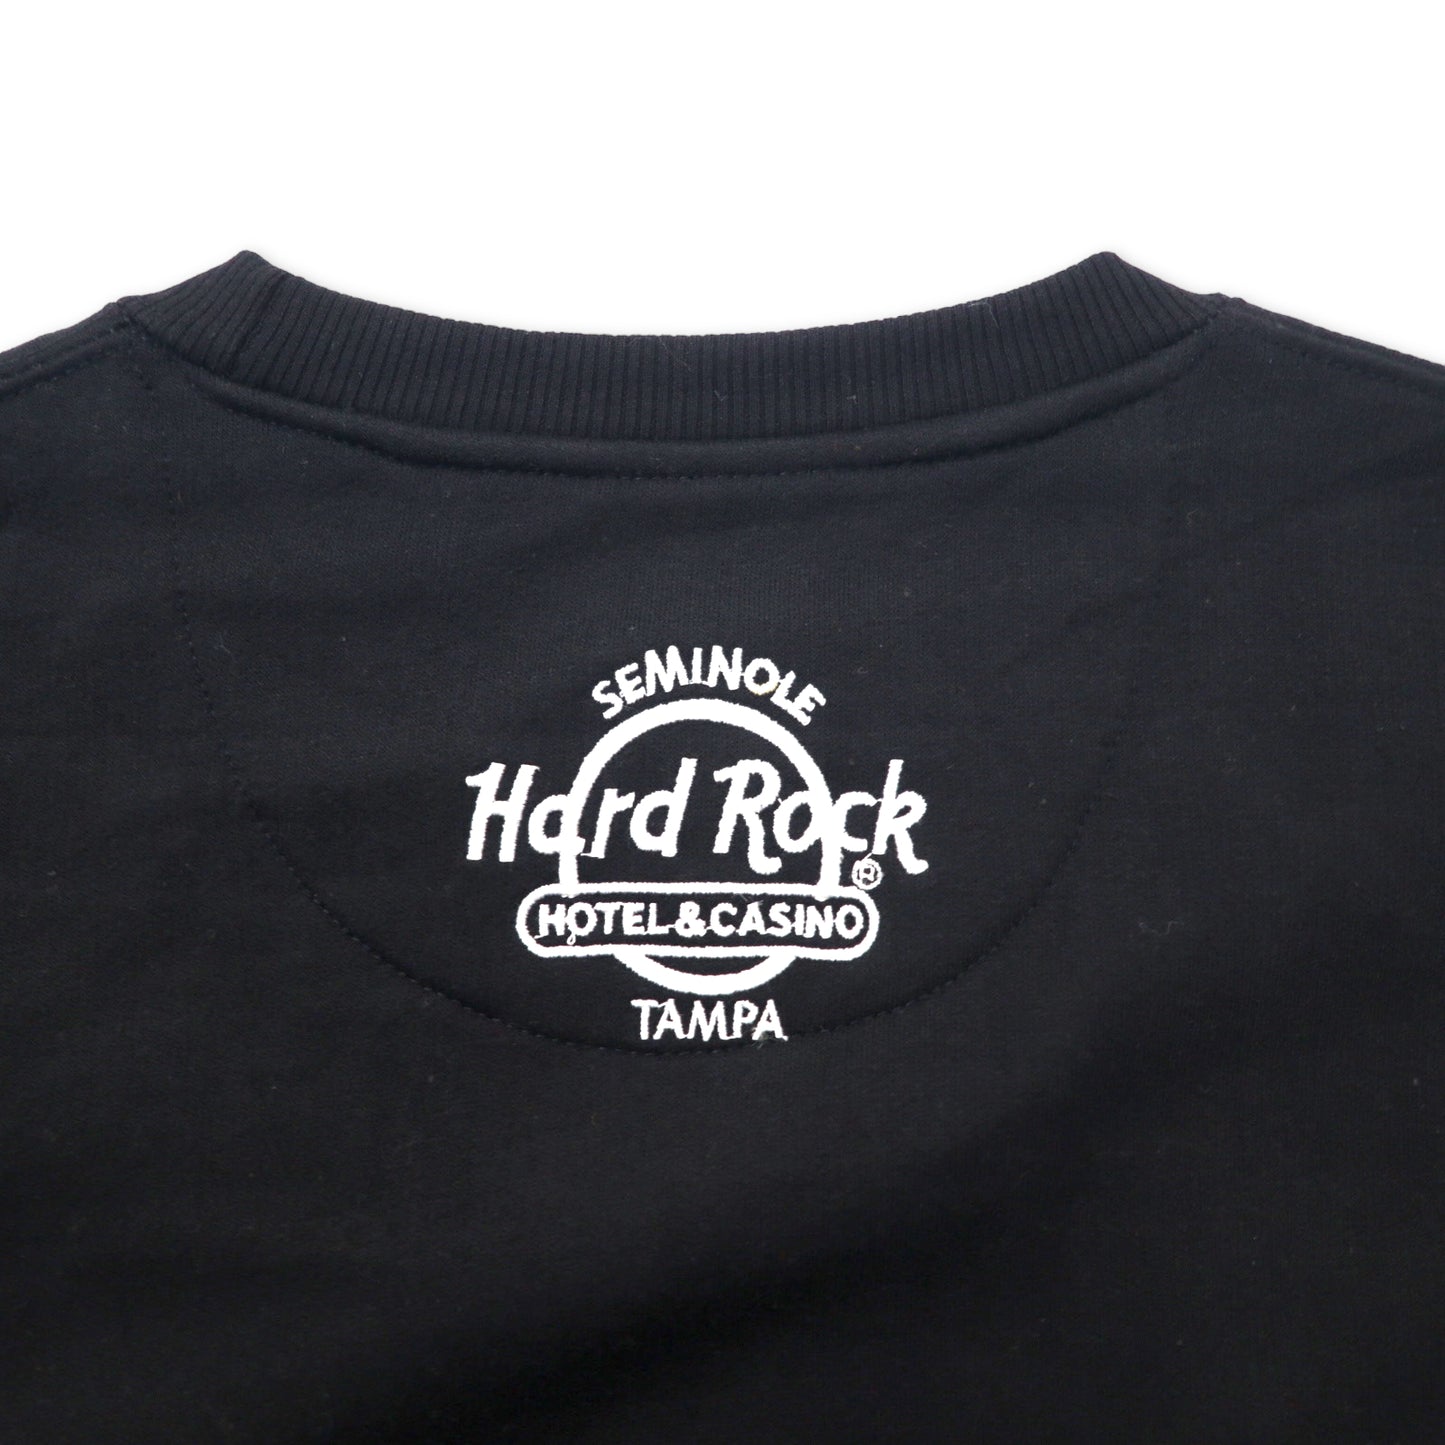 Hard Rock HOTEL & CASINO ロゴスウェット L ブラック コットン 裏起毛 パキ綿 TAMPA